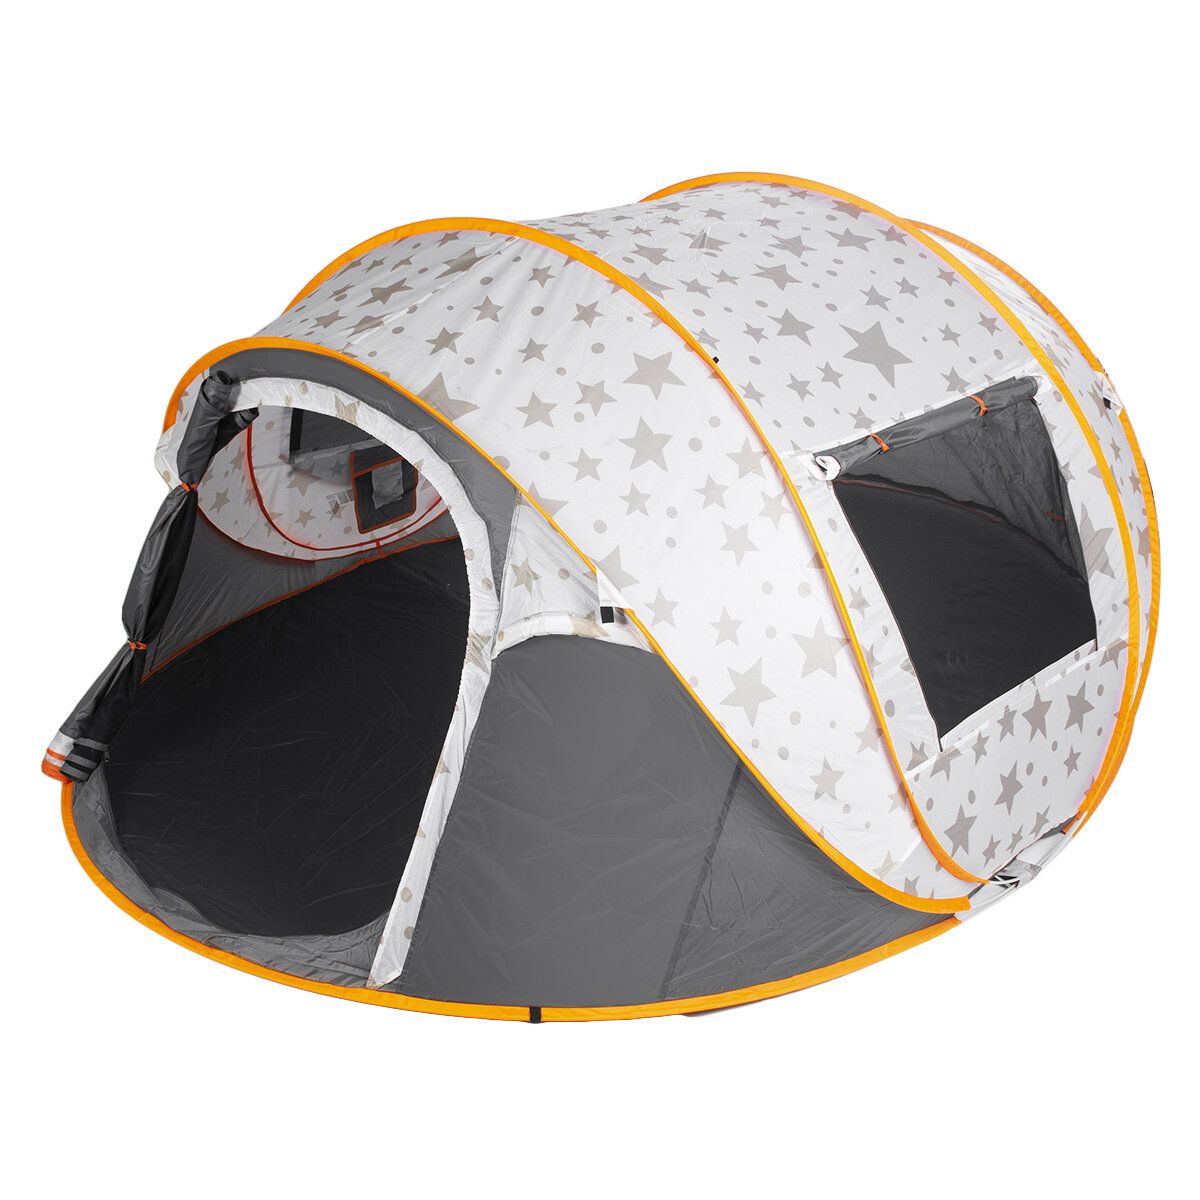 Русский: Палатка для кемпинга на 5-6 человек Пляжная палатка Семейный тент Солнцезащитный навес с двумя дверьми Автоматический тент для отдыха на открытом воздухе